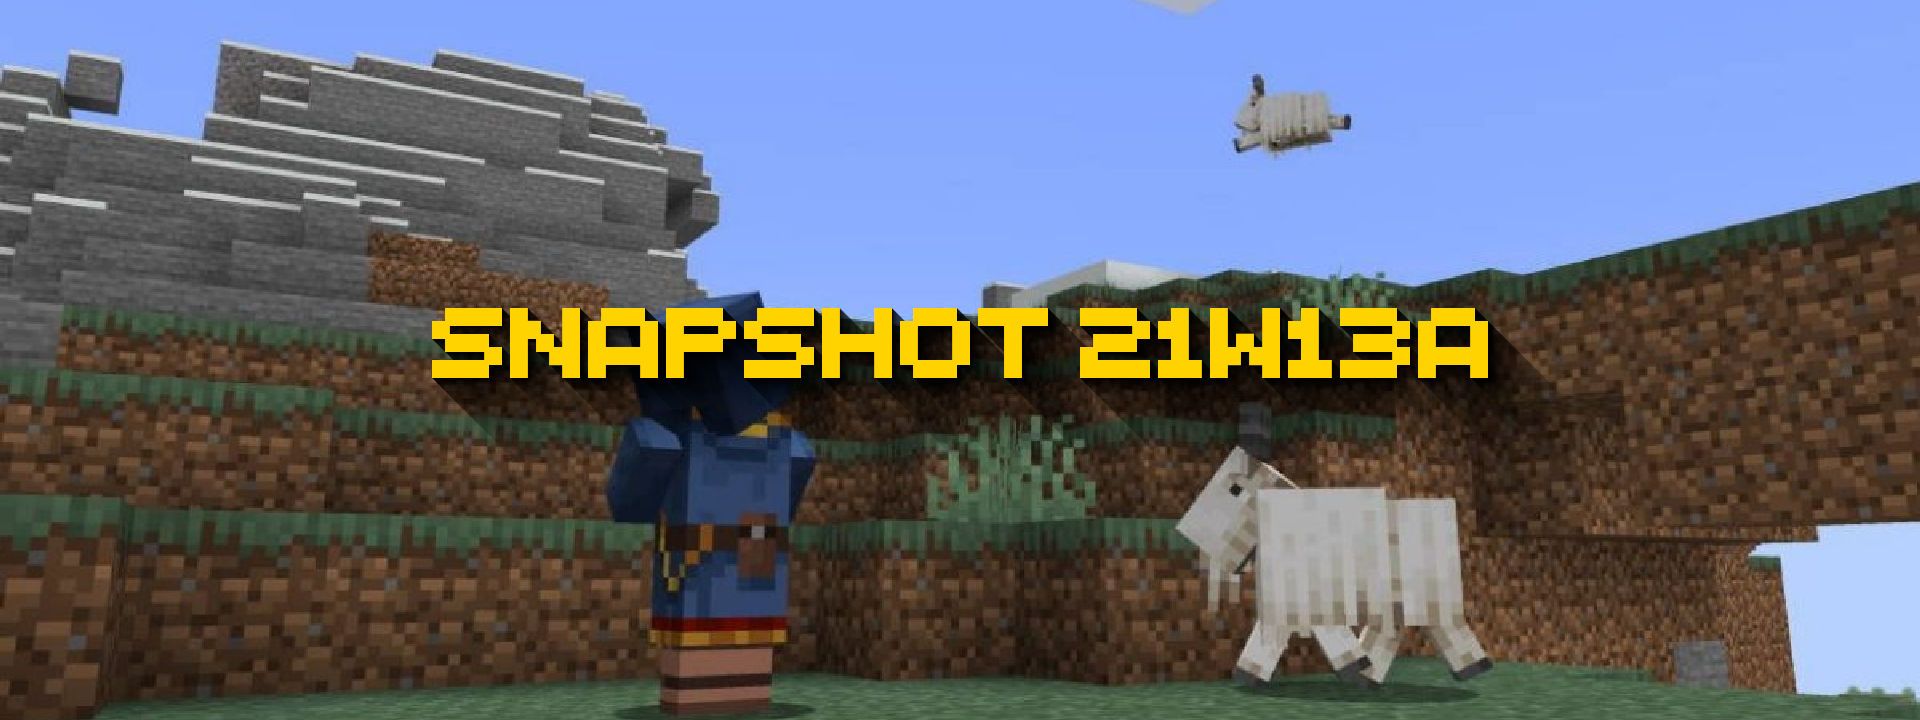 Minecraft Snapshot 21w13a